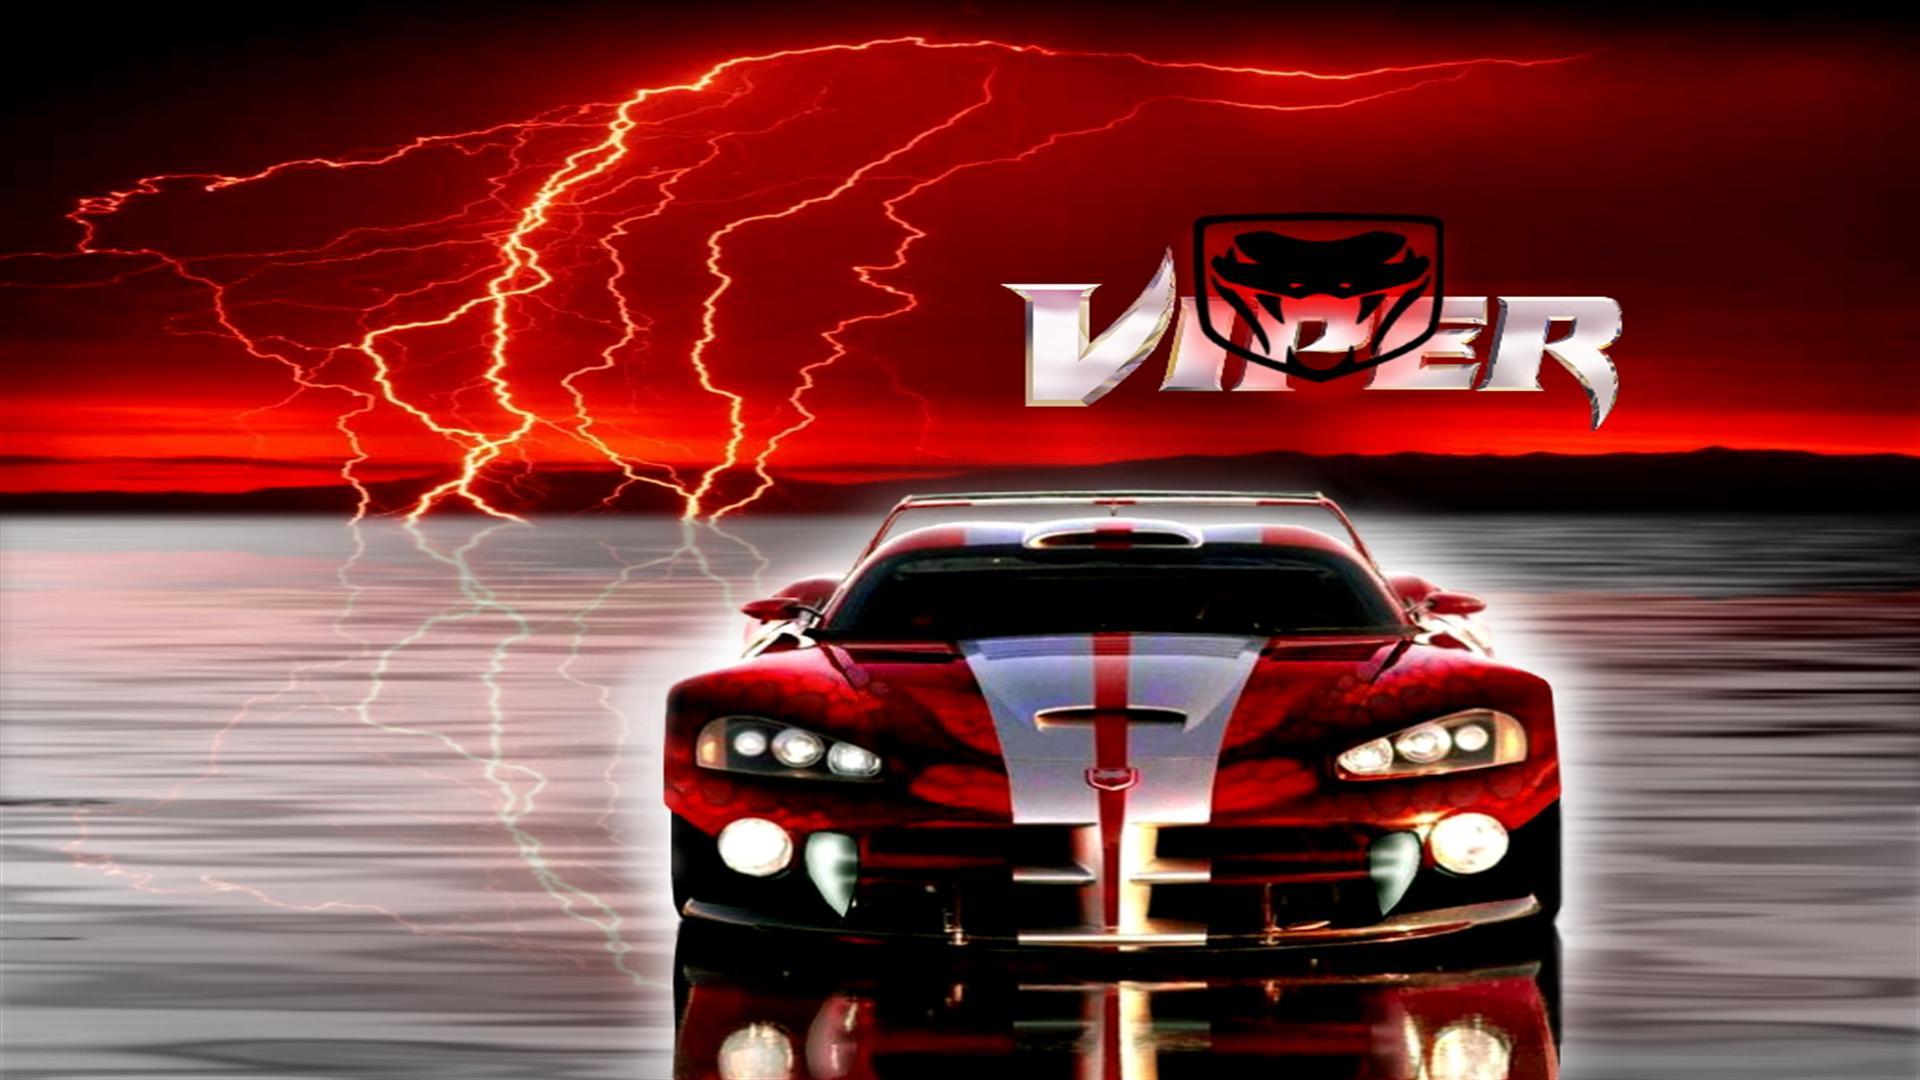 Dodge Viper HD Wallpaper